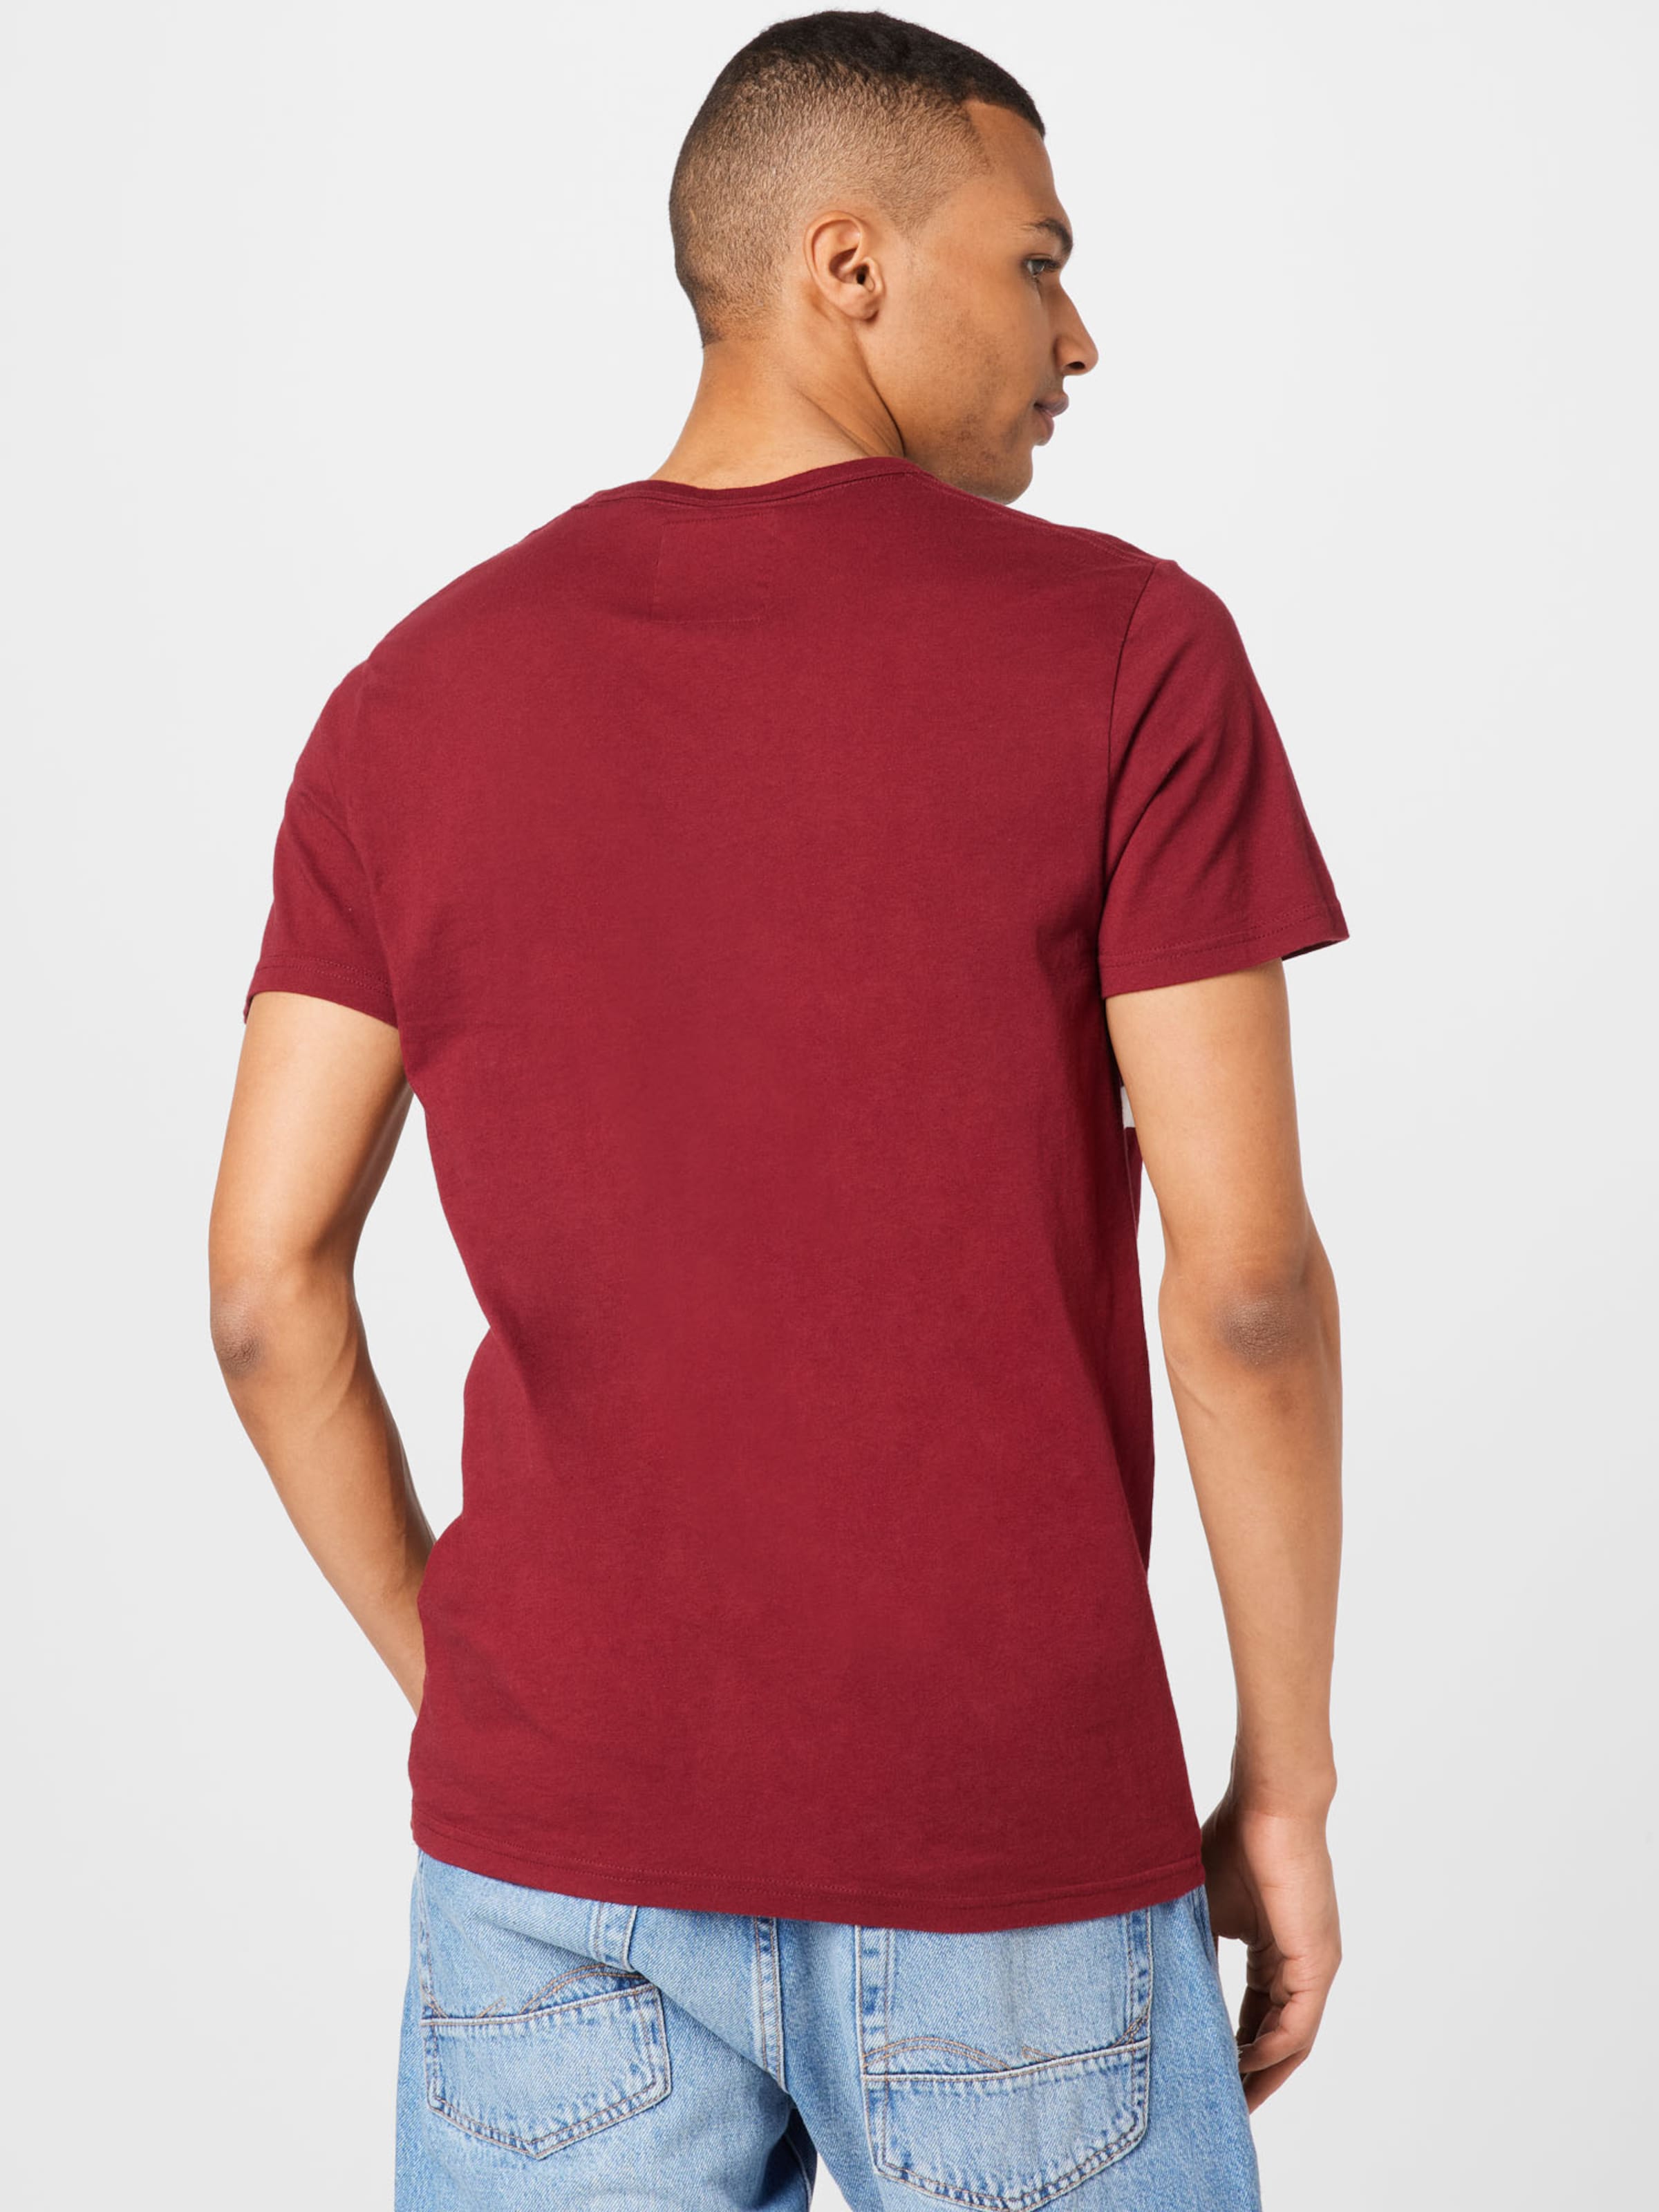 Maglie e T-shirt Uomo HOLLISTER Maglietta in Rosso Vino 